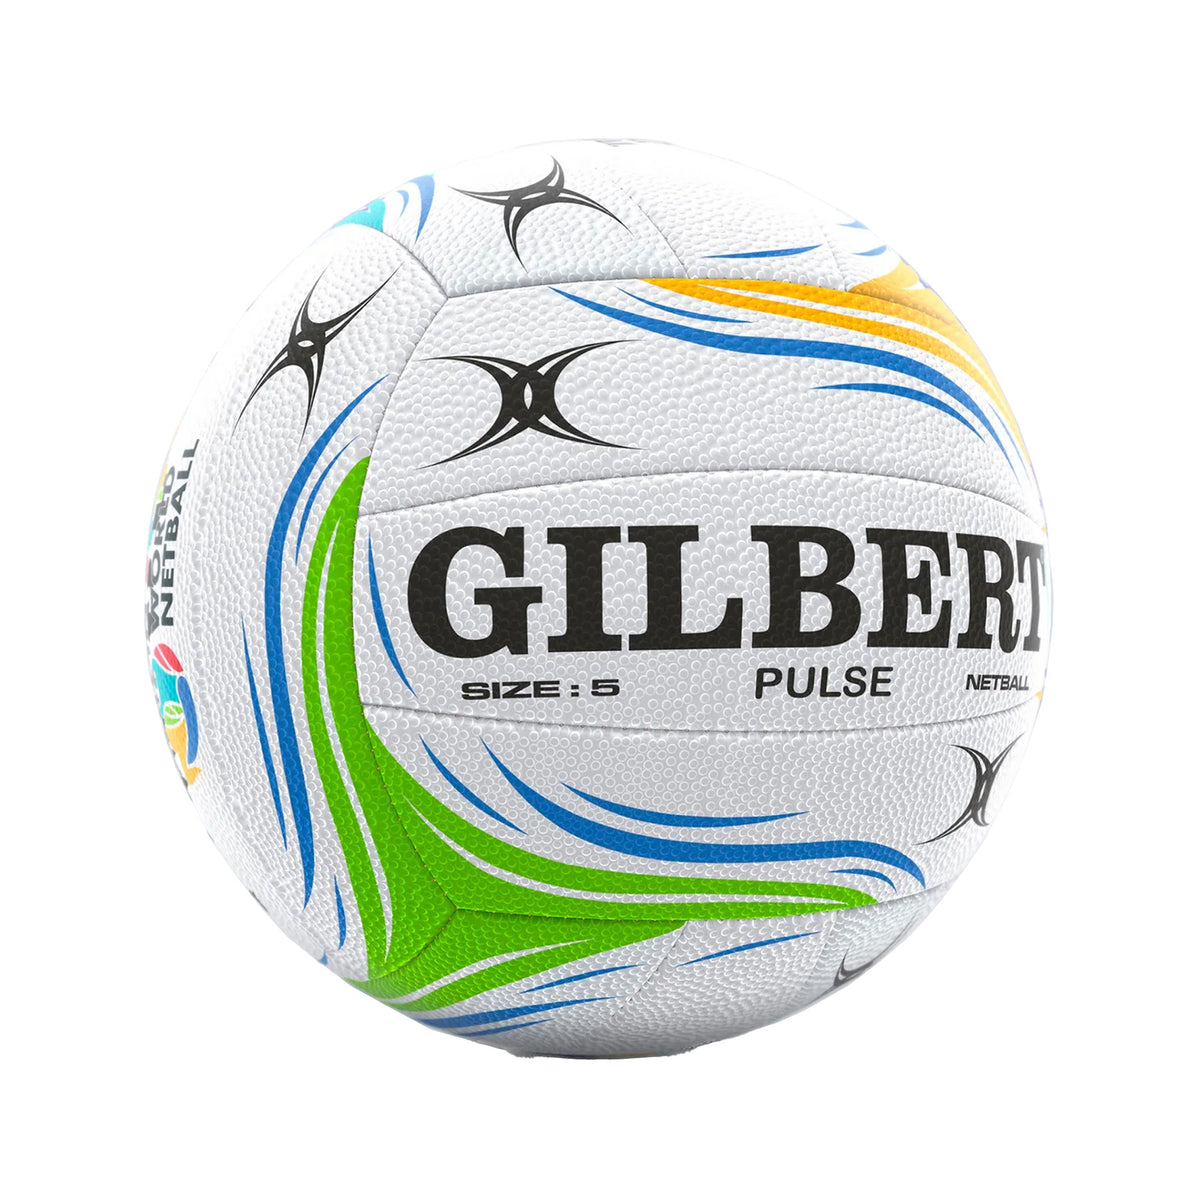 Gilbert Netball Match Pulse - 5